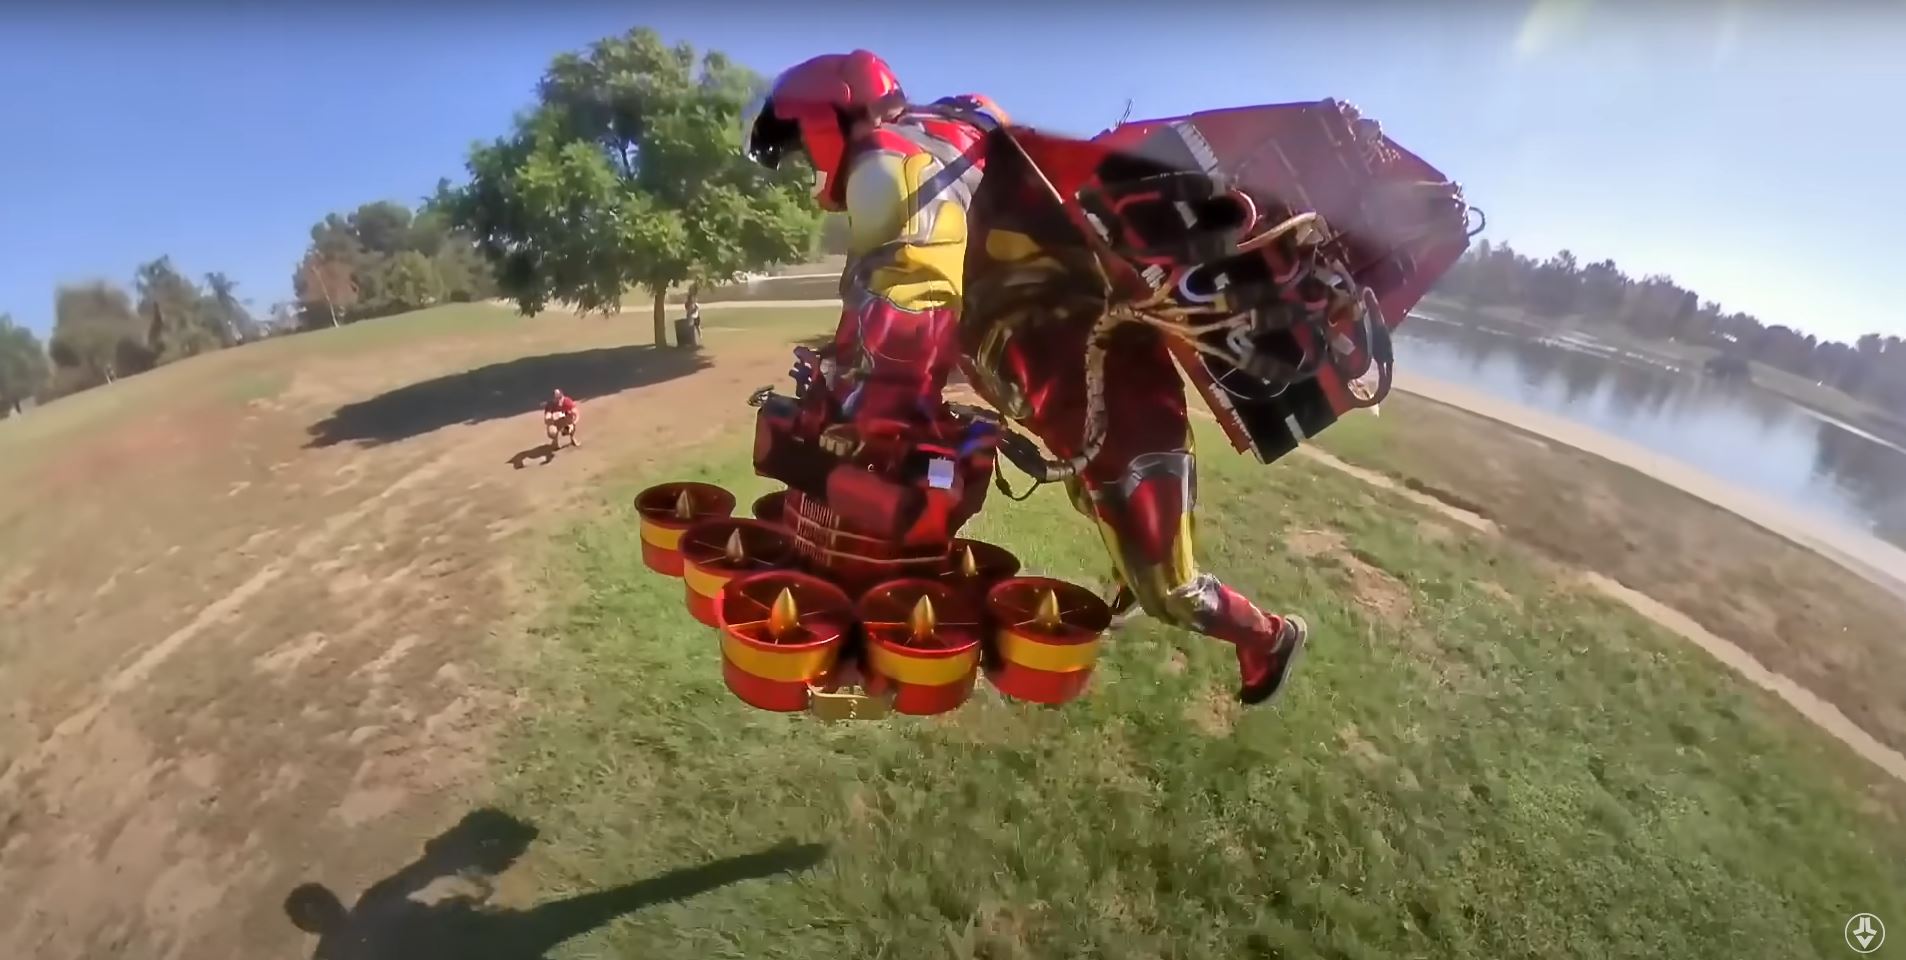 Bộ giáp Iron Man đời thực với khả năng tự động bay về phía người mặc giống hệt phim Marvel - Ảnh 6.